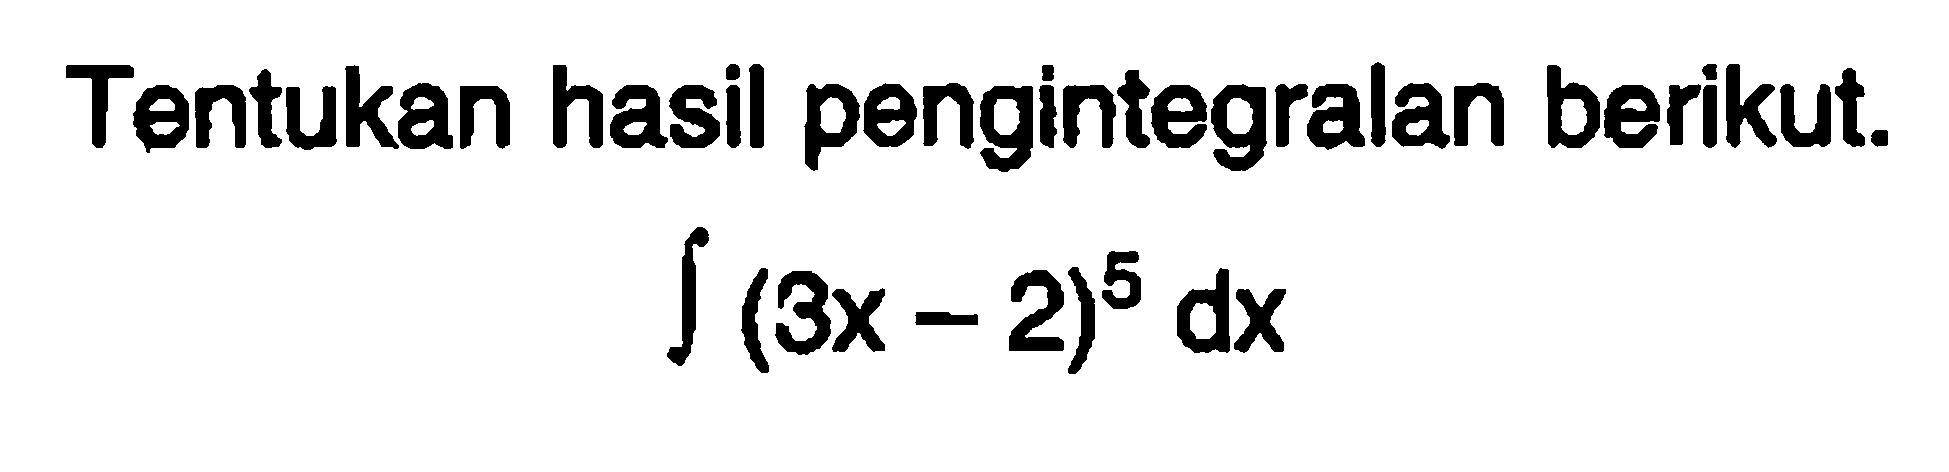 Tentukan hasil pengintegralan berikut. integral (3x-2)^5 dx